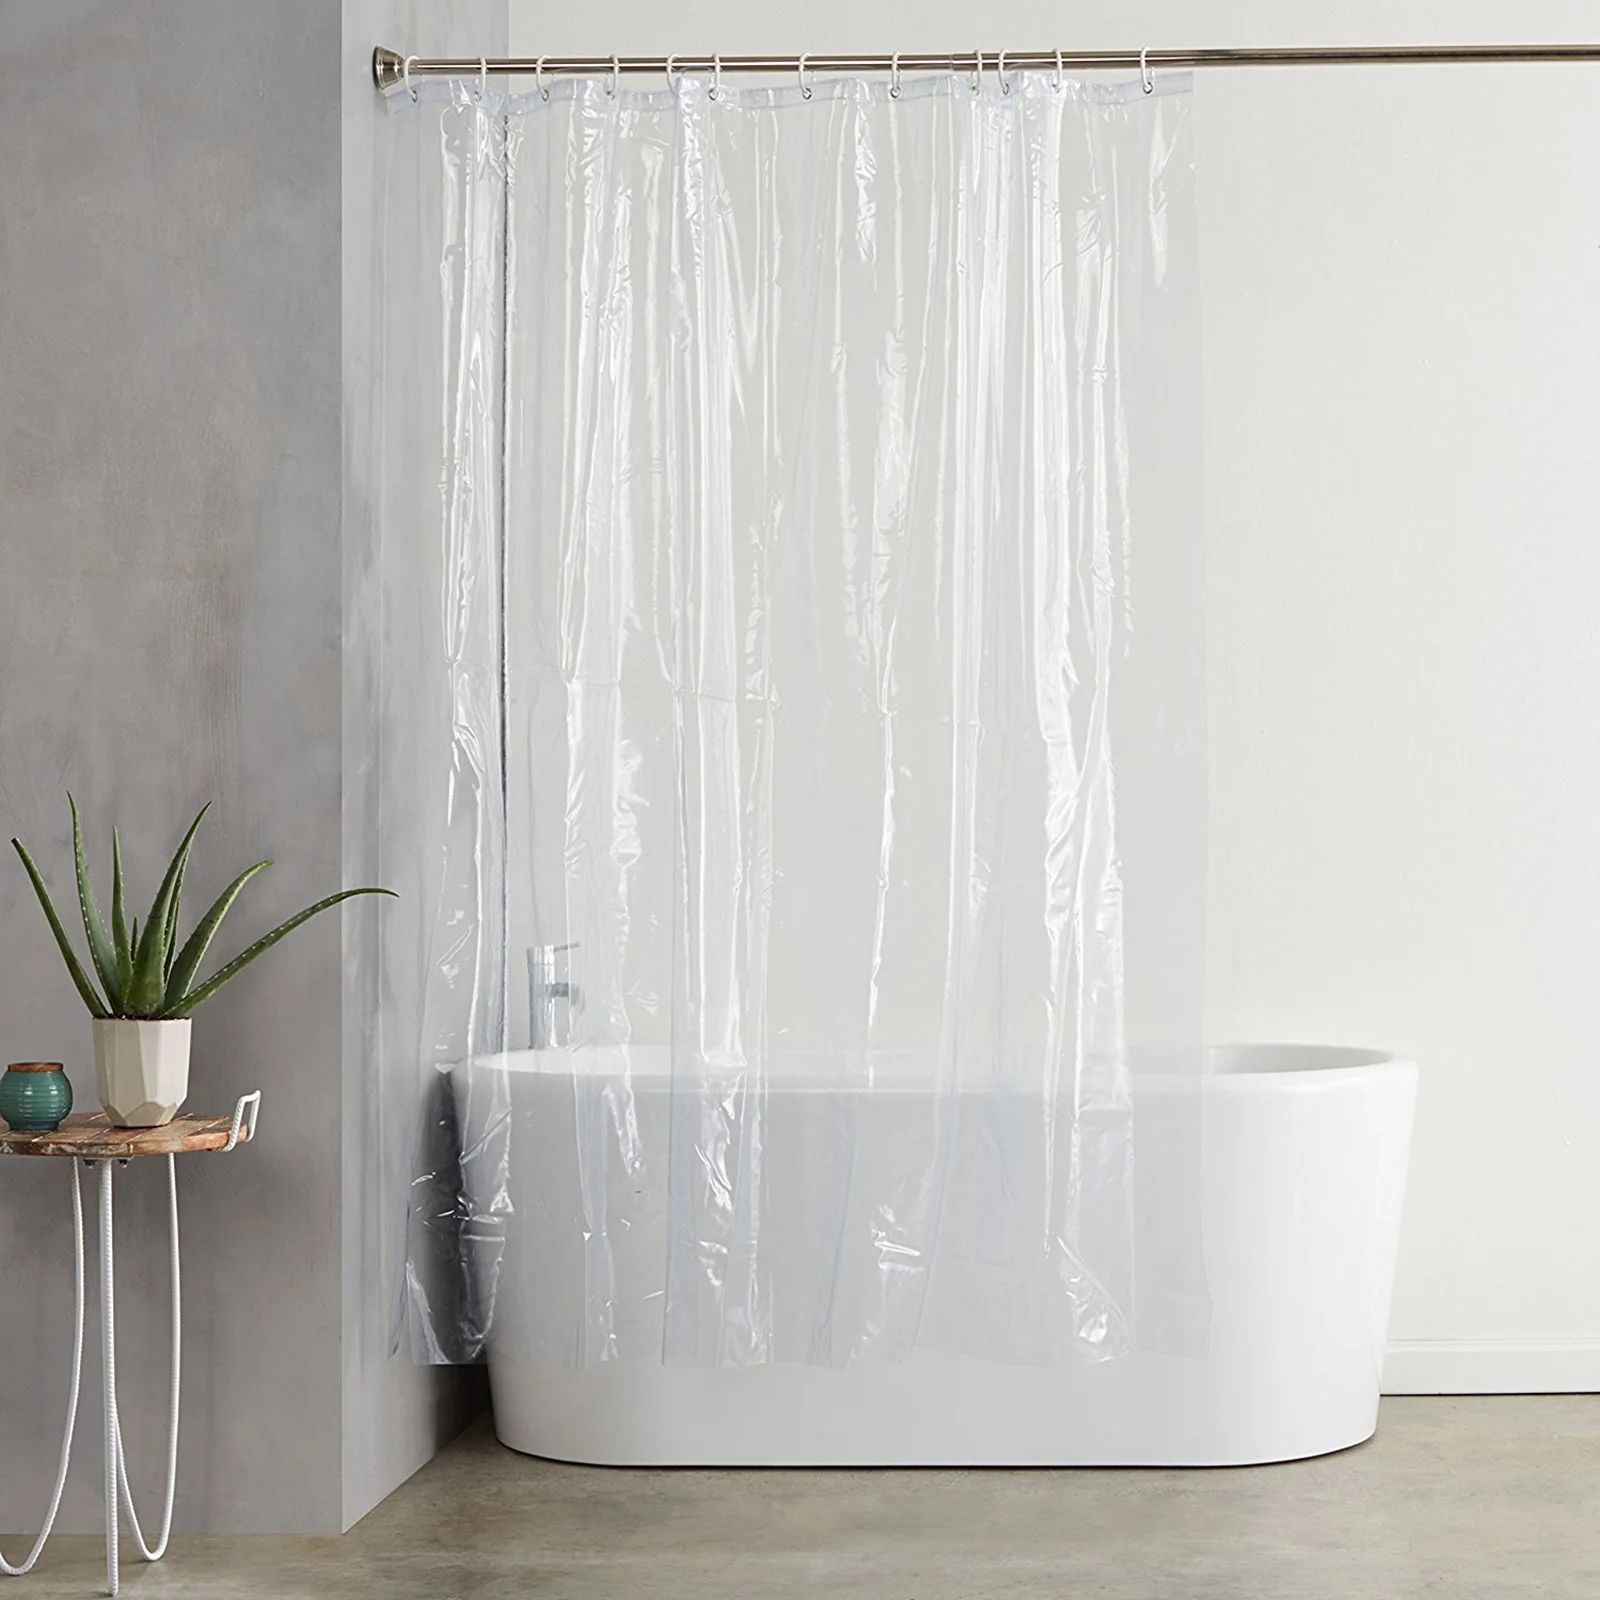 Bathroom Waterproof Shower Curtain Transparent shower curtain Shower Curtain Magnets for Keeping Bathroom Dry Clean